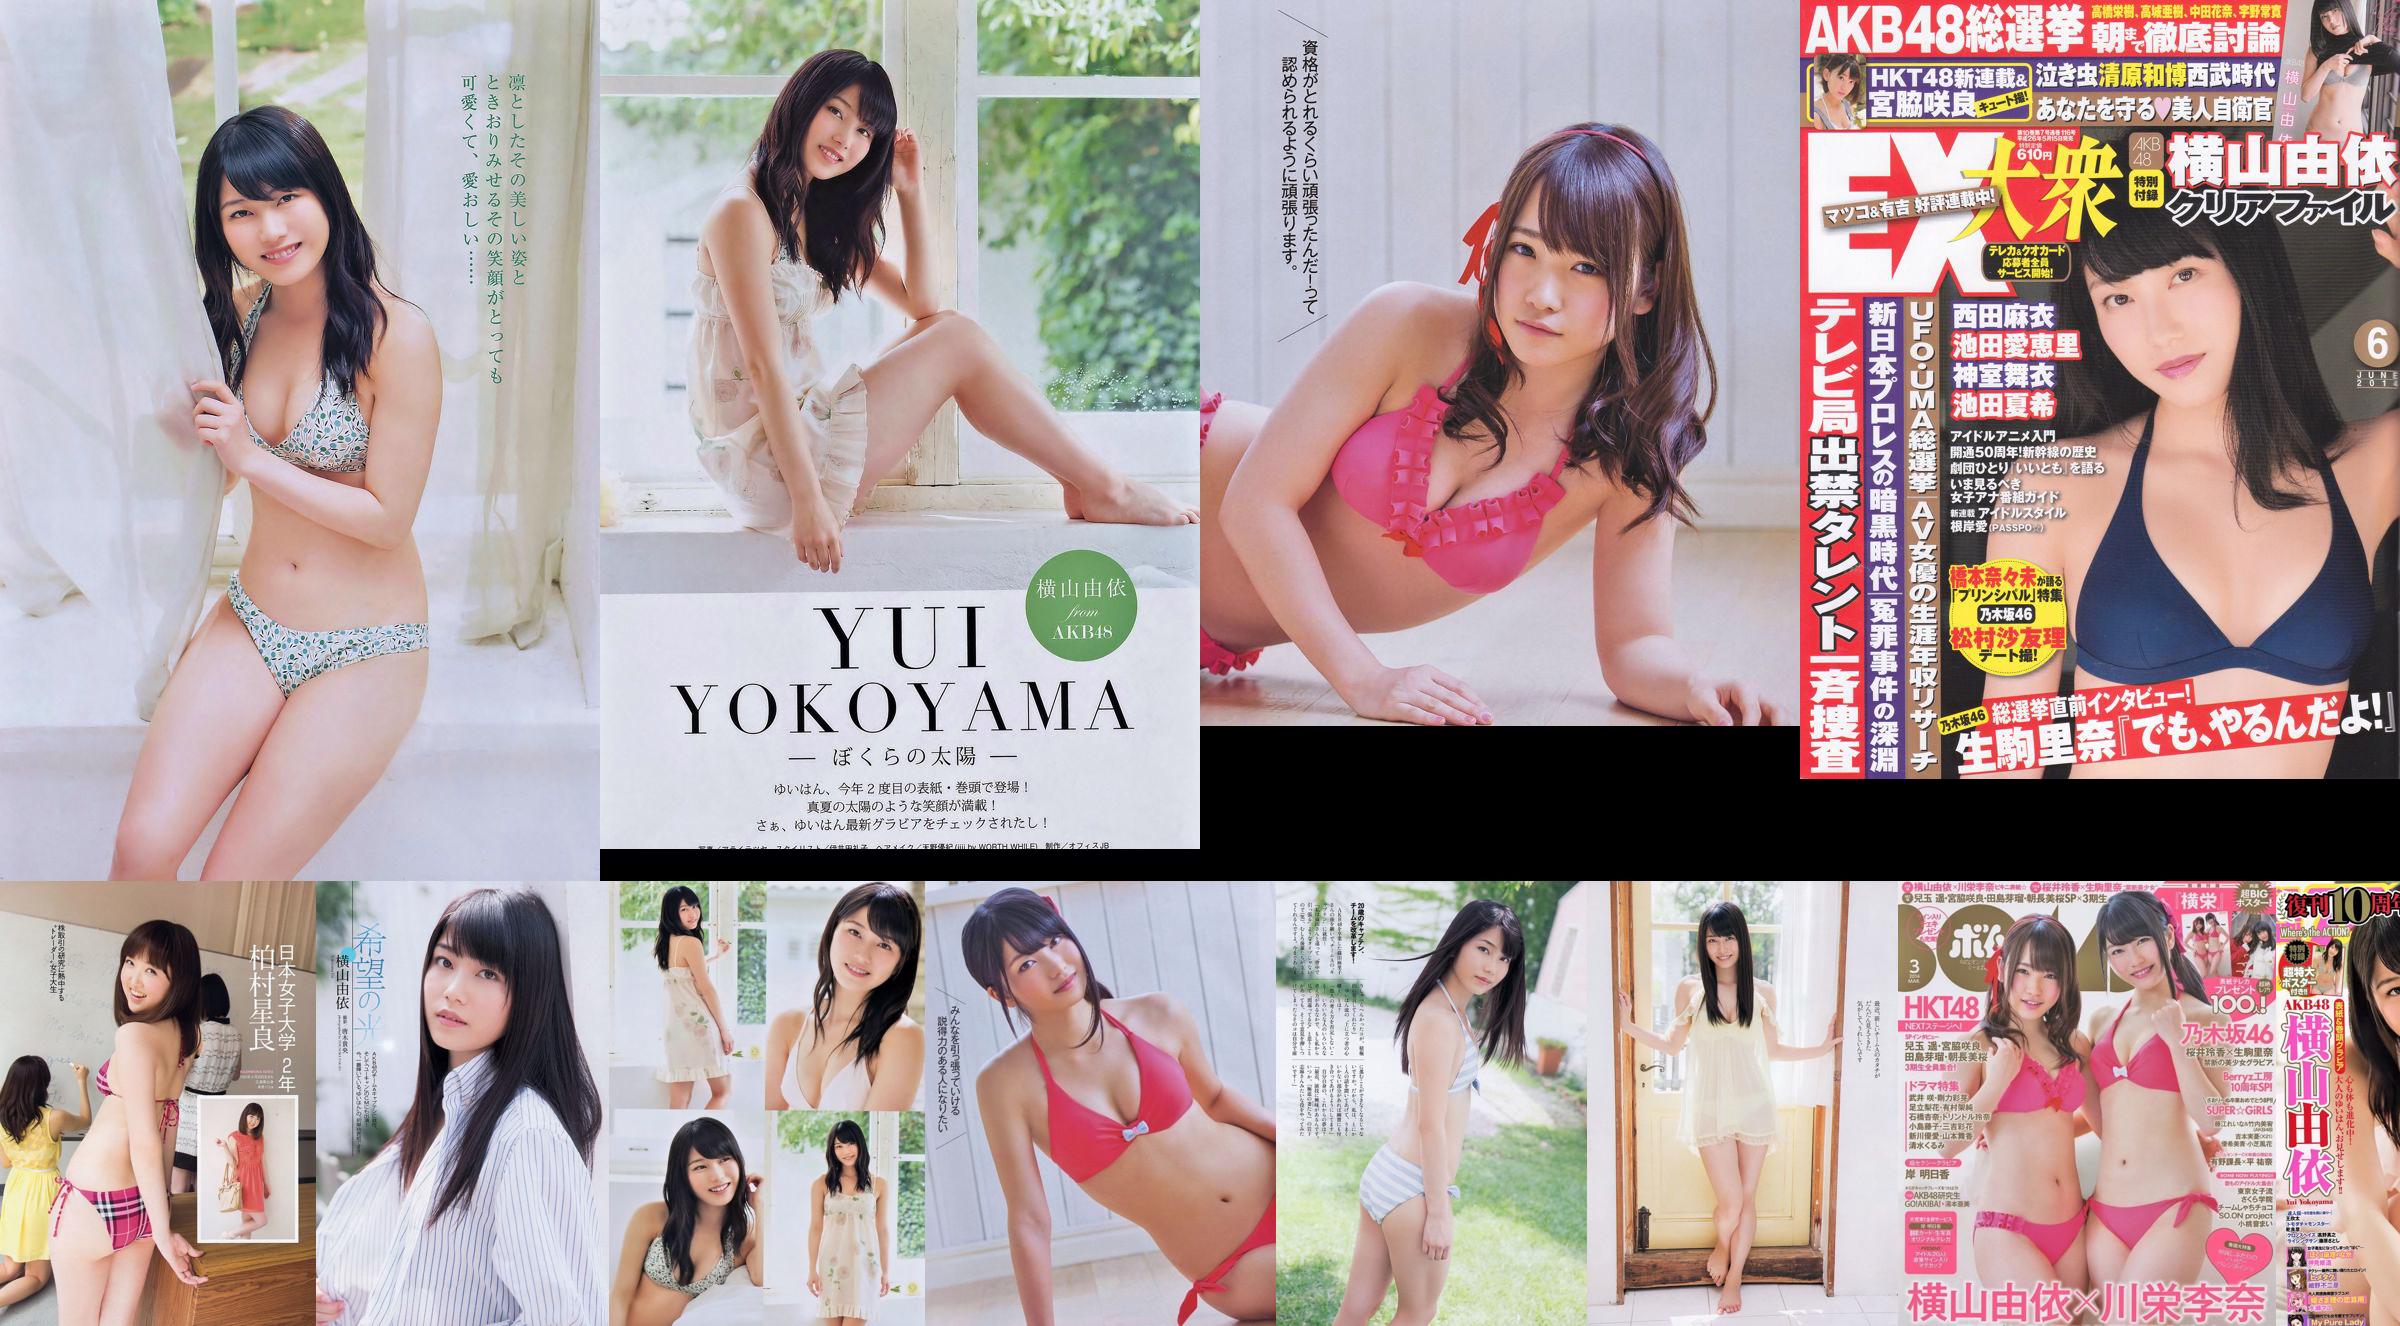 Momoiro Clover Z Yui Yokoyama Yua Shinkawa Mio Uema Anri Sugihara Kumi Yagami [Playboy Mingguan] 2013 No.20 Foto Moshi No.ff0e3e Halaman 9